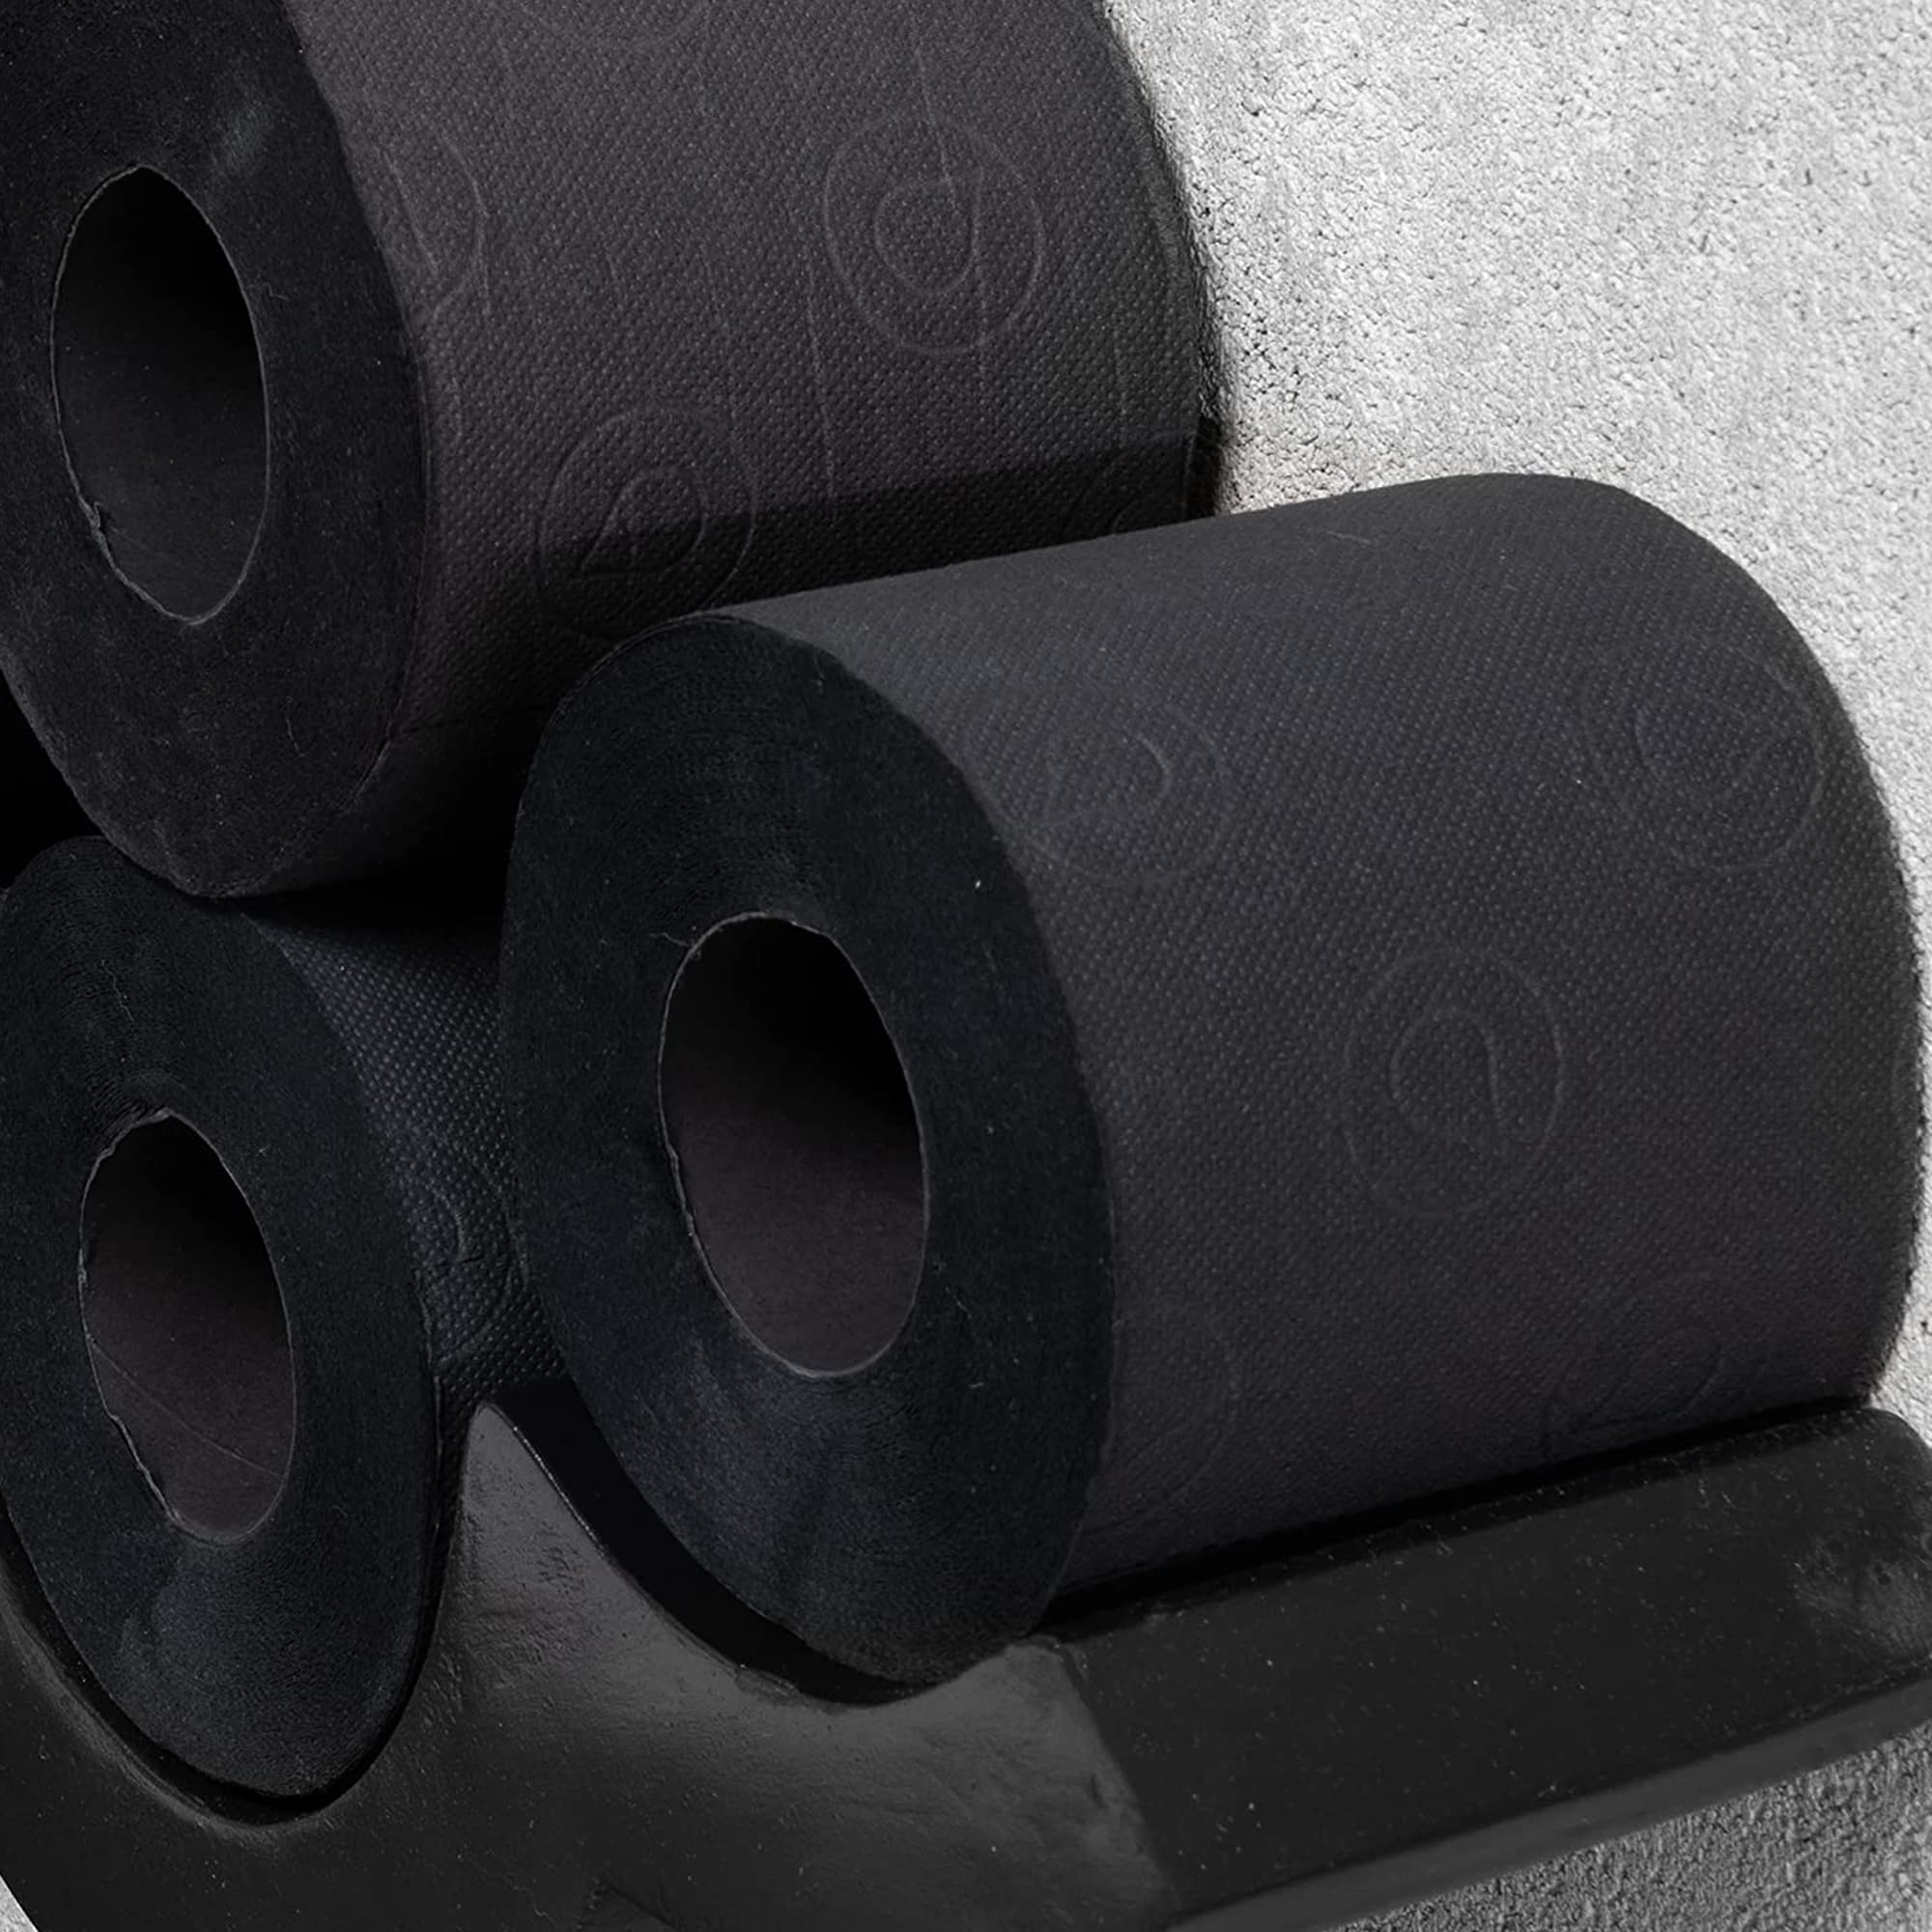 Black Paper Towel 6-Pack, Renova